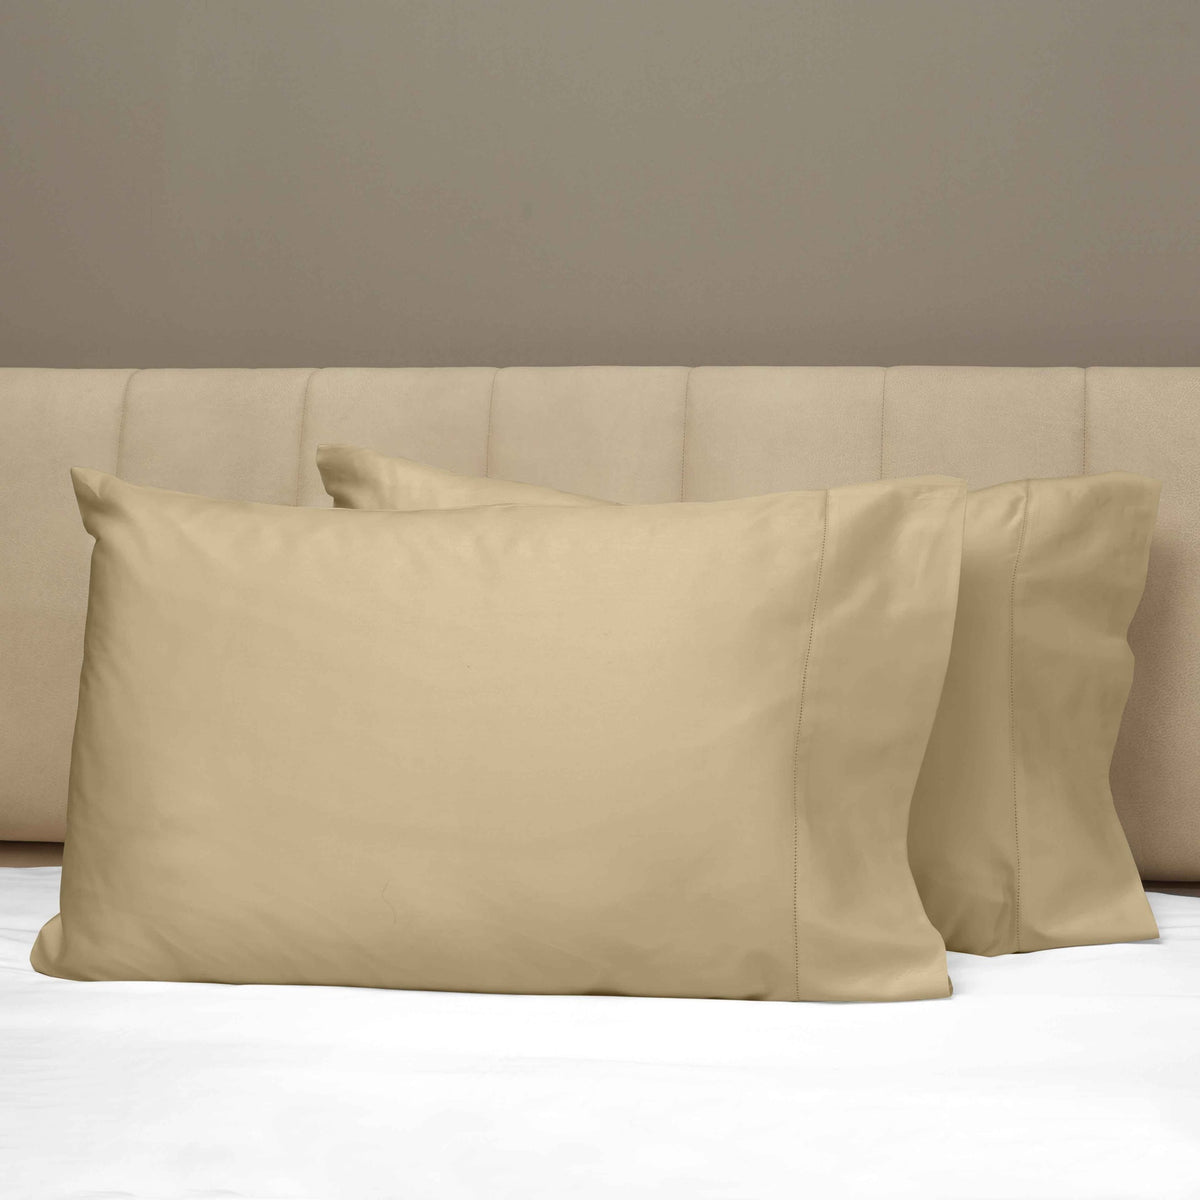 Closeup View of Signoria Raffaello Pillowcases in Coffee Color